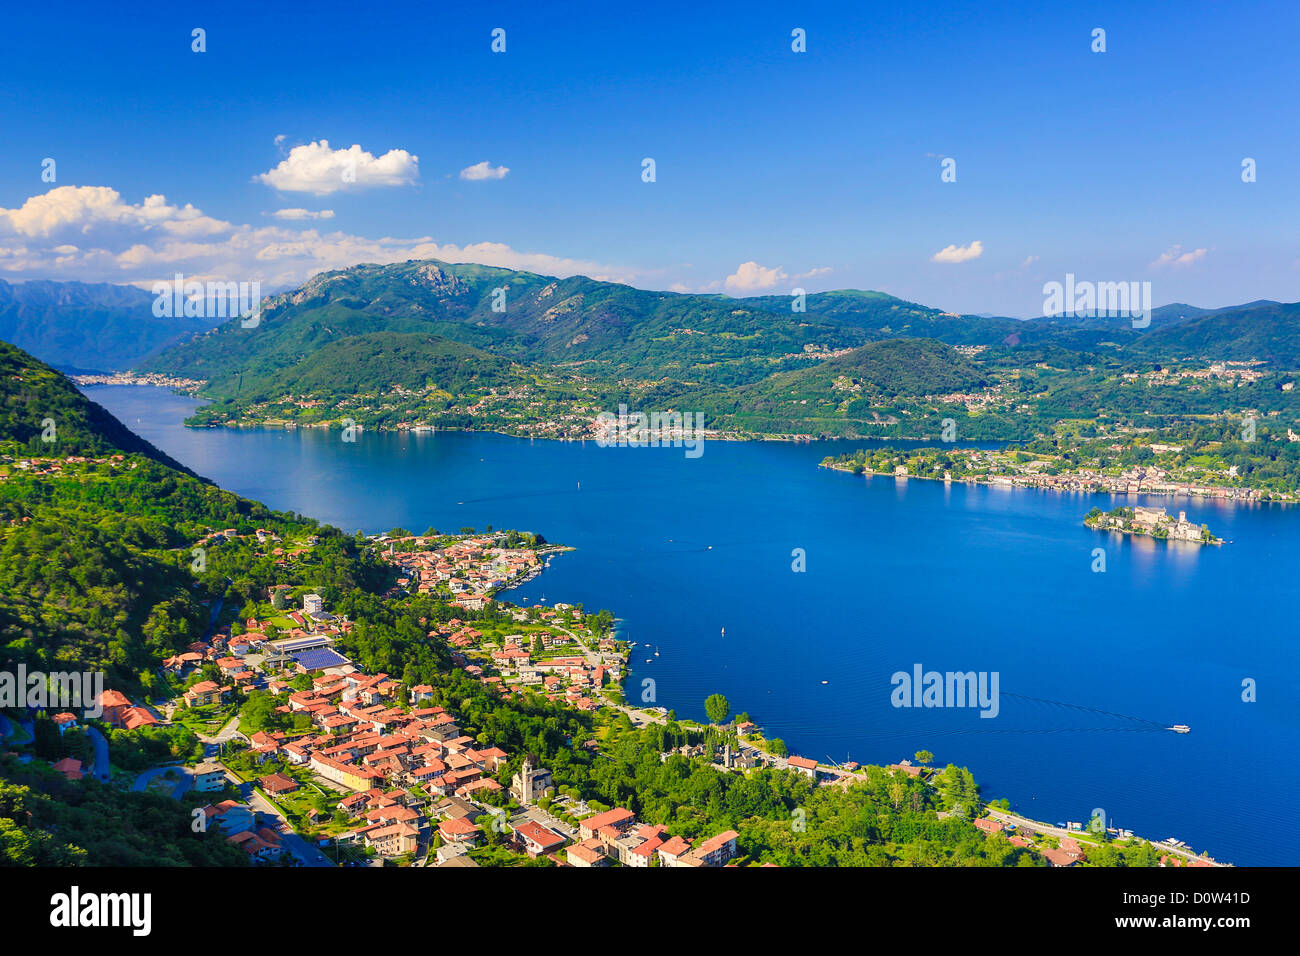 Italy, Europe, travel, Orta Lake, Pella, alps, island, landscape, mountains, orta, Piedmont, roofs, san gulio, tourism, town, Stock Photo